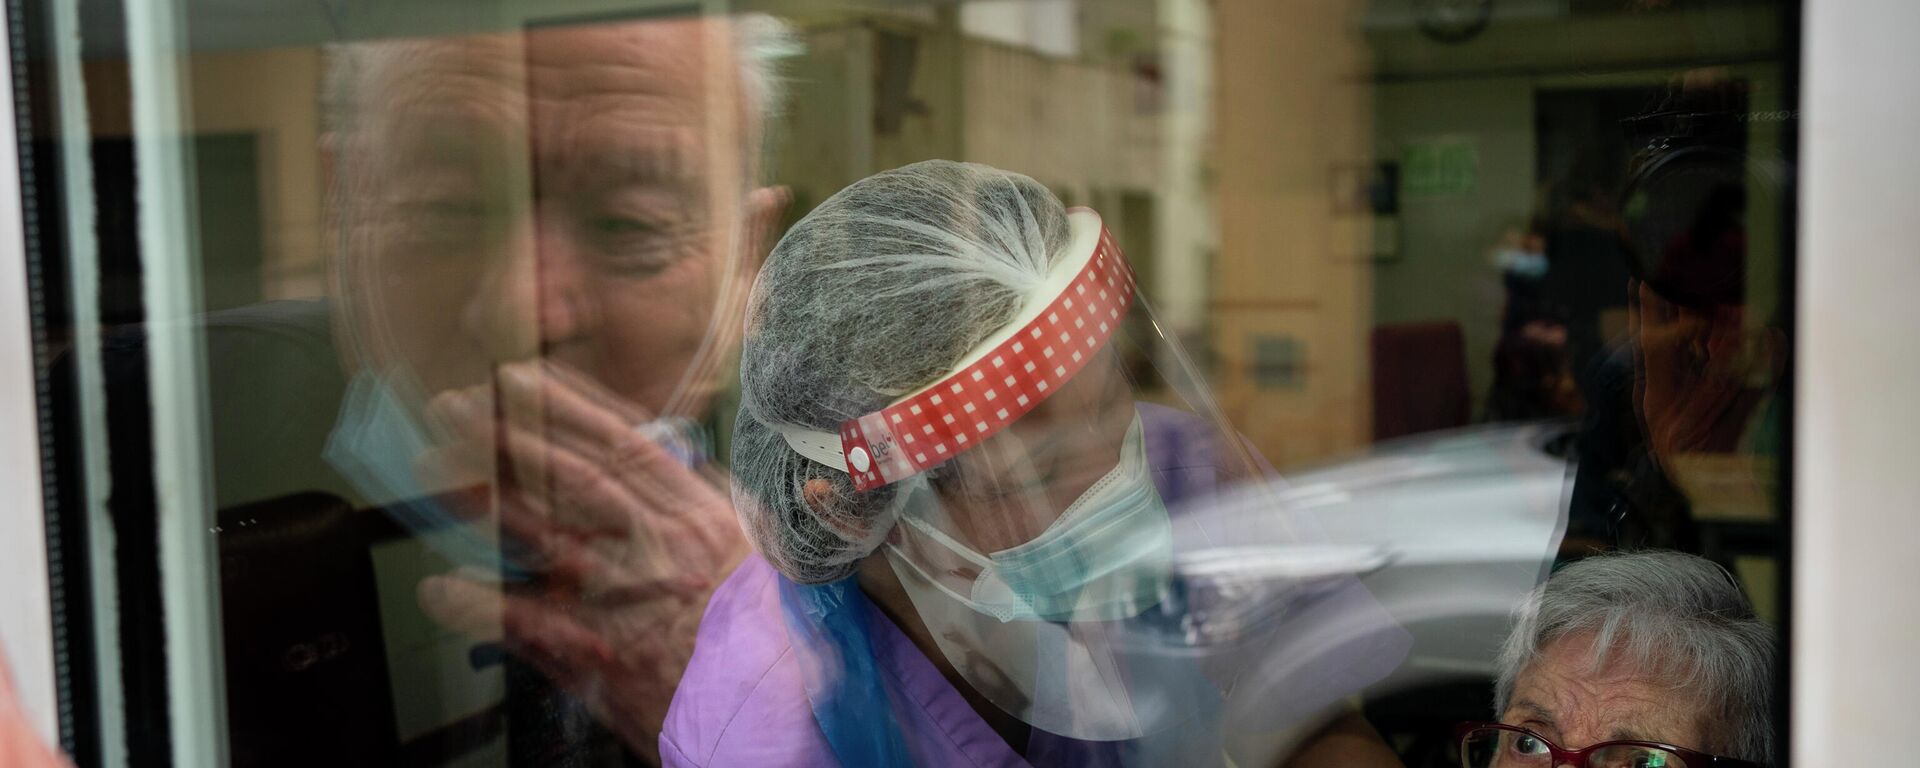 Javier Anto y su esposa Carmen Panzano se lanzan besos a través de la ventana. Barcelona, 21 de abril de 2021.  - Sputnik Mundo, 1920, 22.04.2021